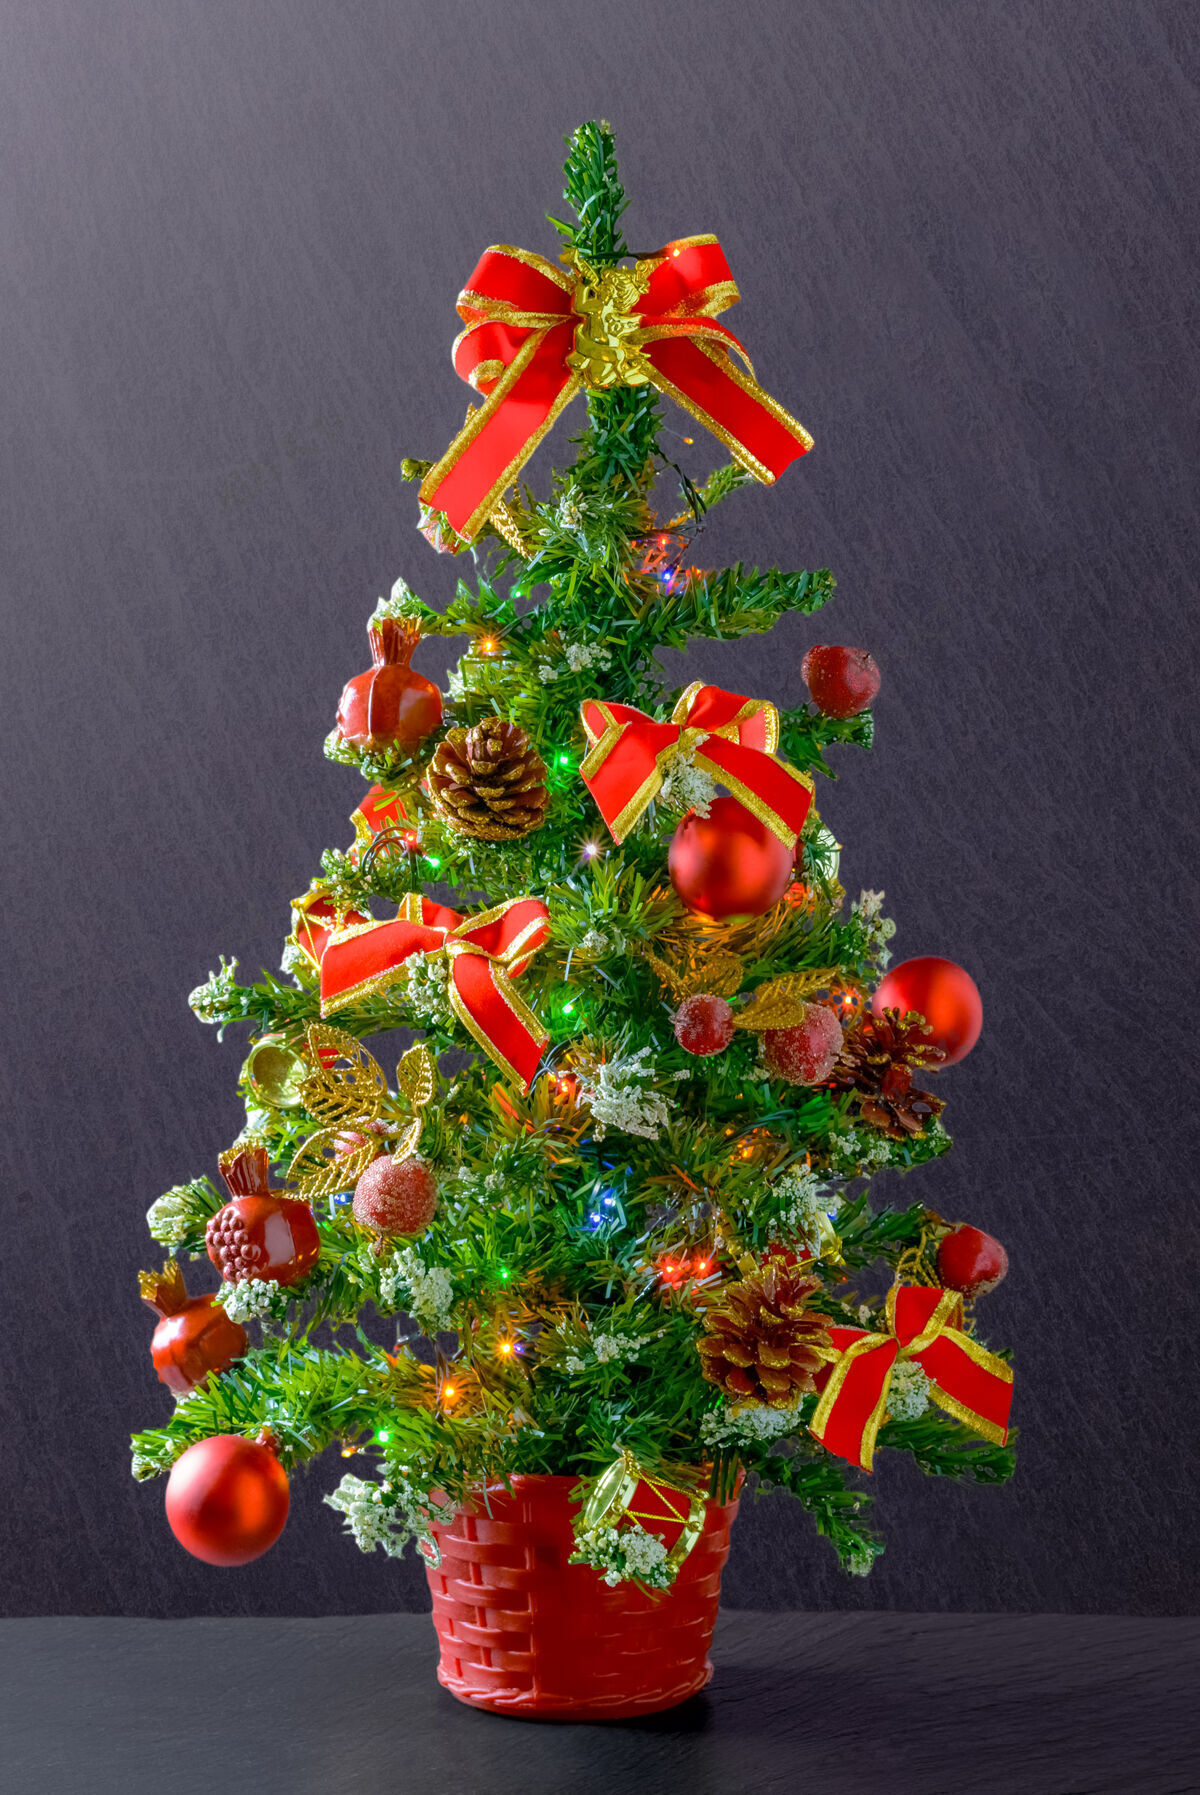 球垂直拍摄的圣诞树装饰着红丝带和球丝带季节性圣诞节